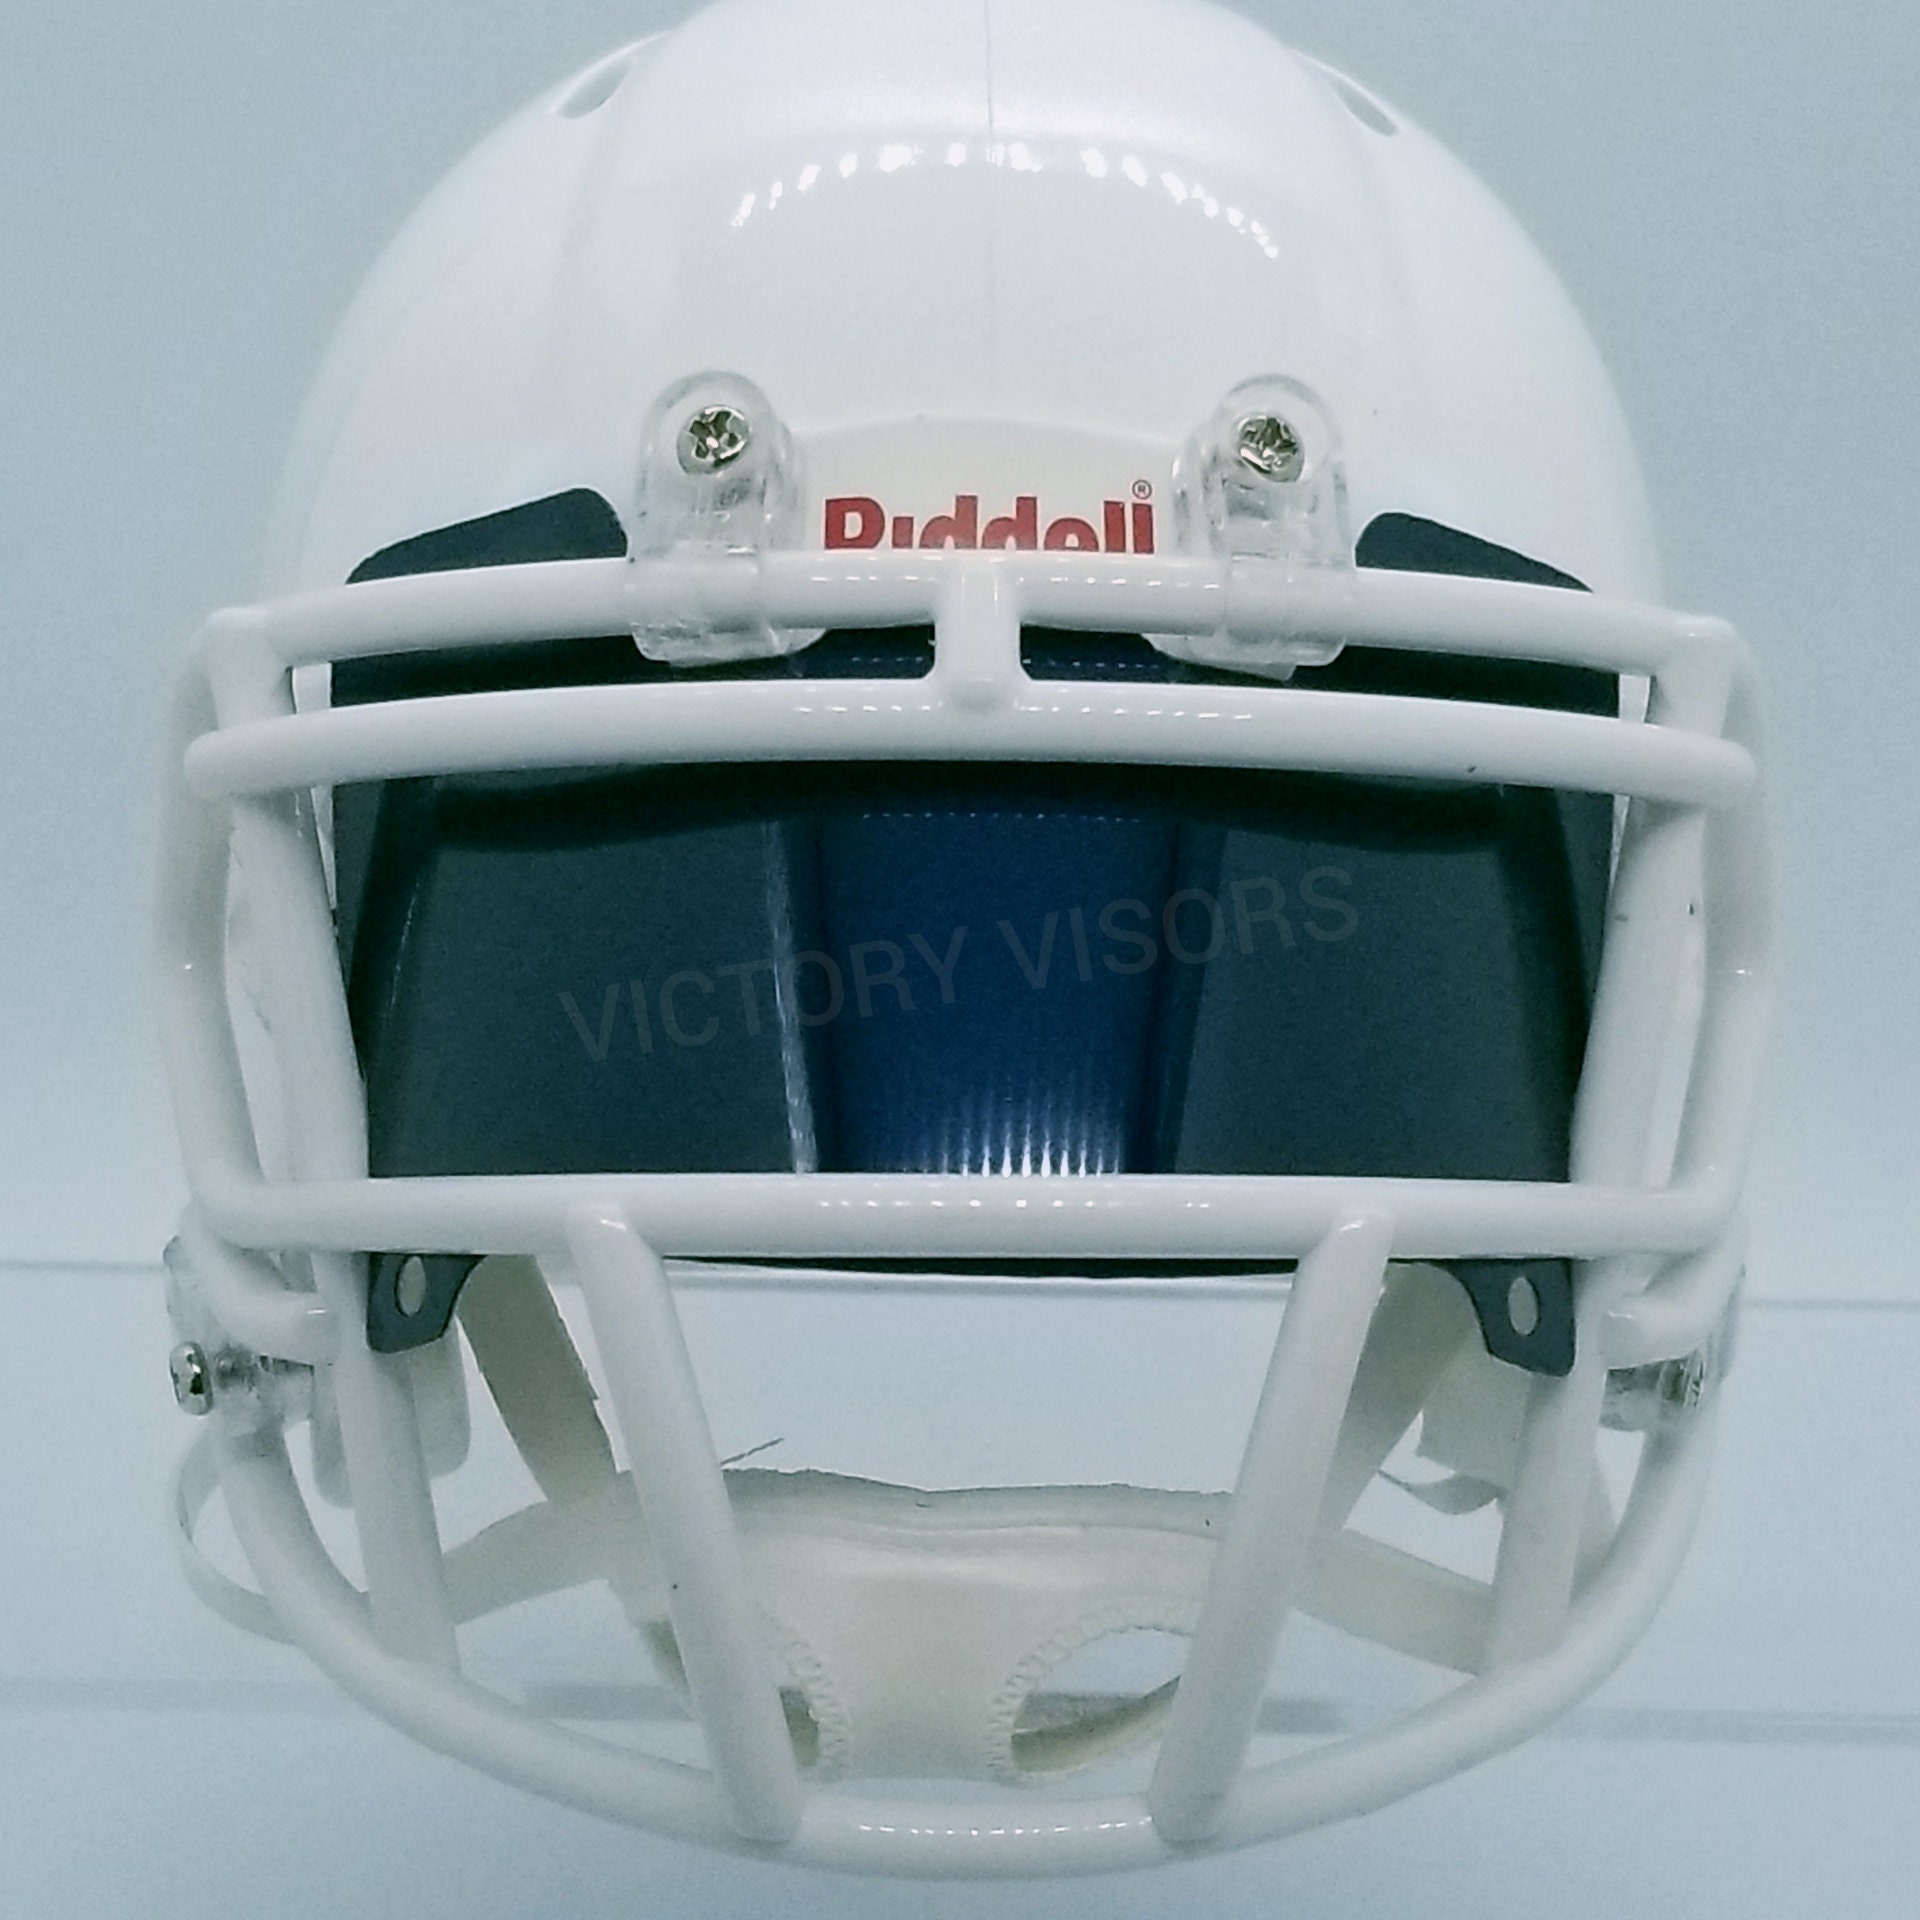 EYE SHIELD / VISOR ONLY! for FLORIDA STATE SEMINOLES Mini Football Helmet